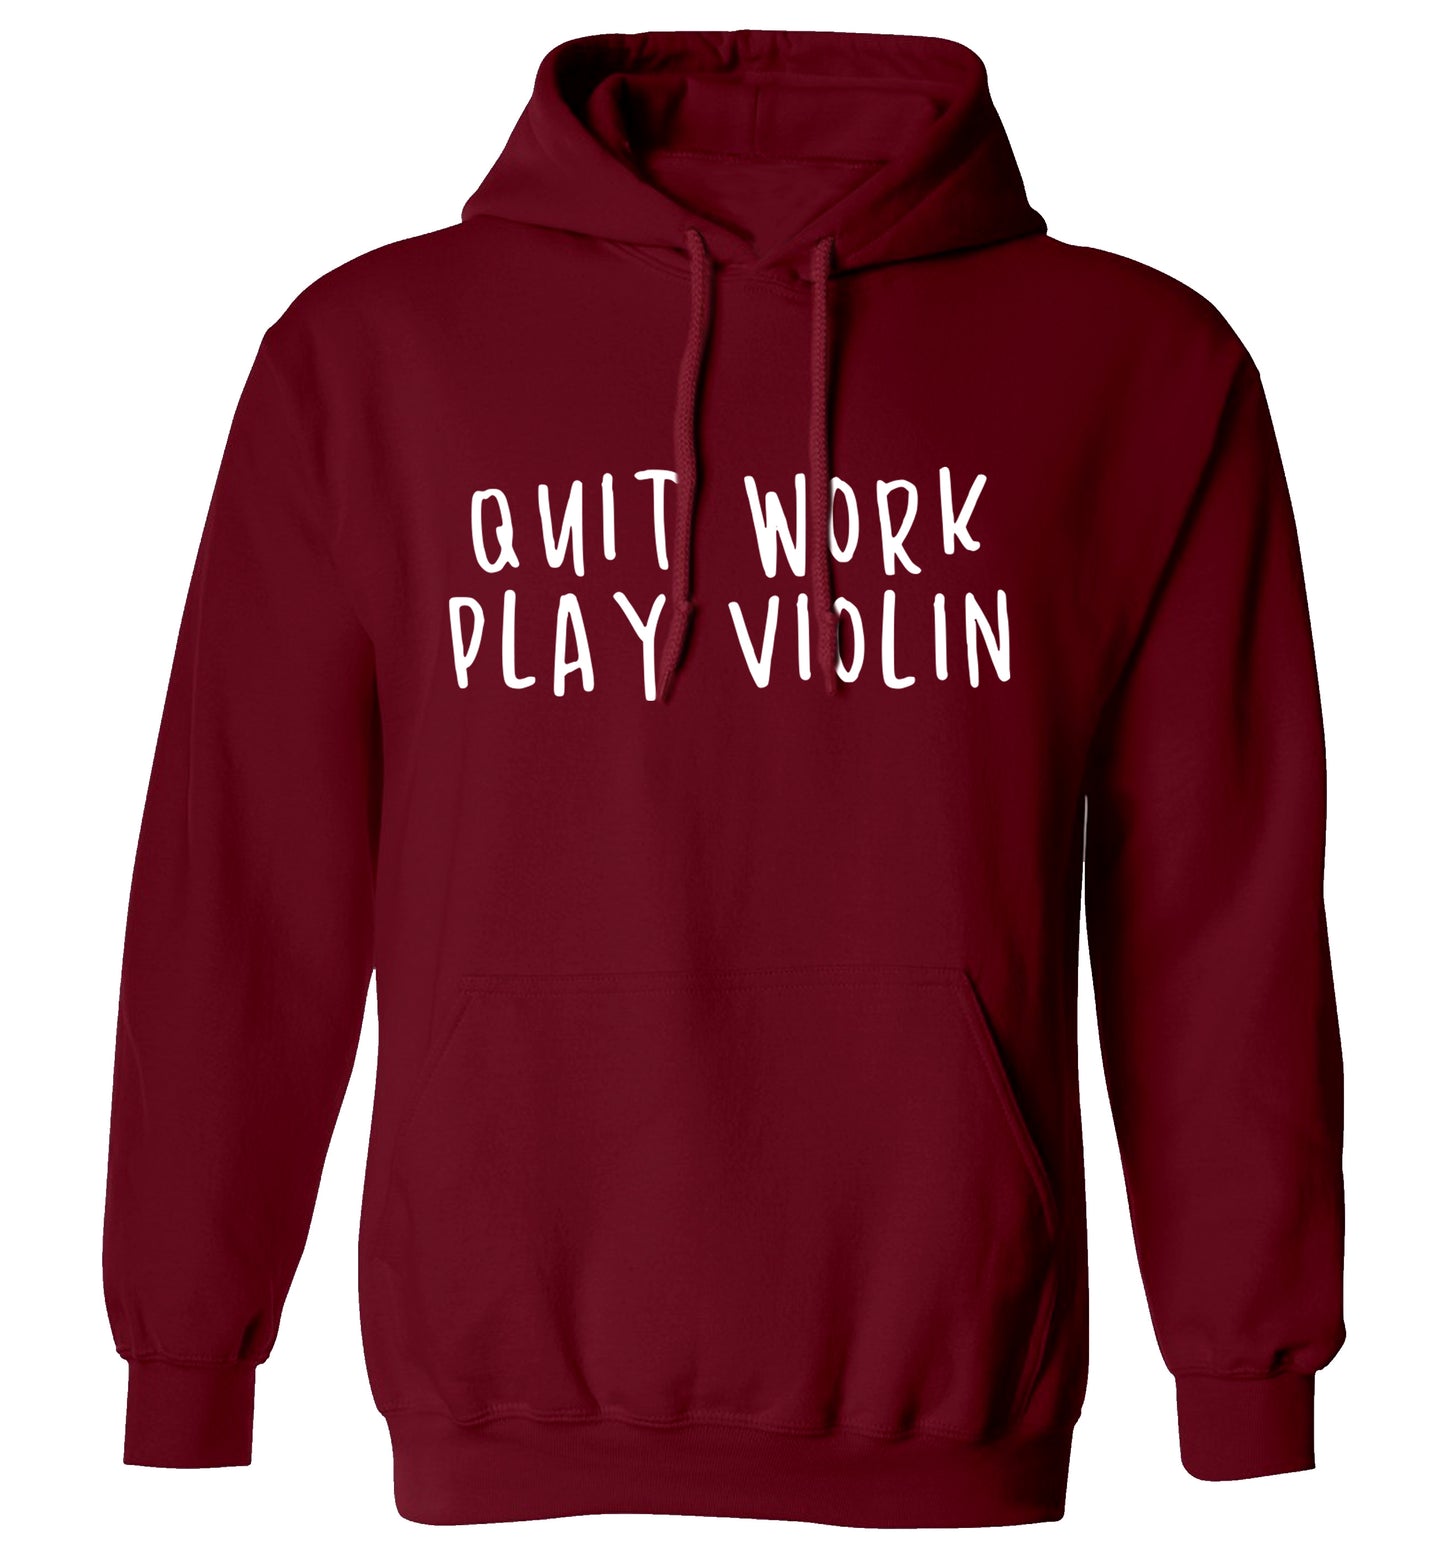 Quit work play violin adults unisex maroon hoodie 2XL